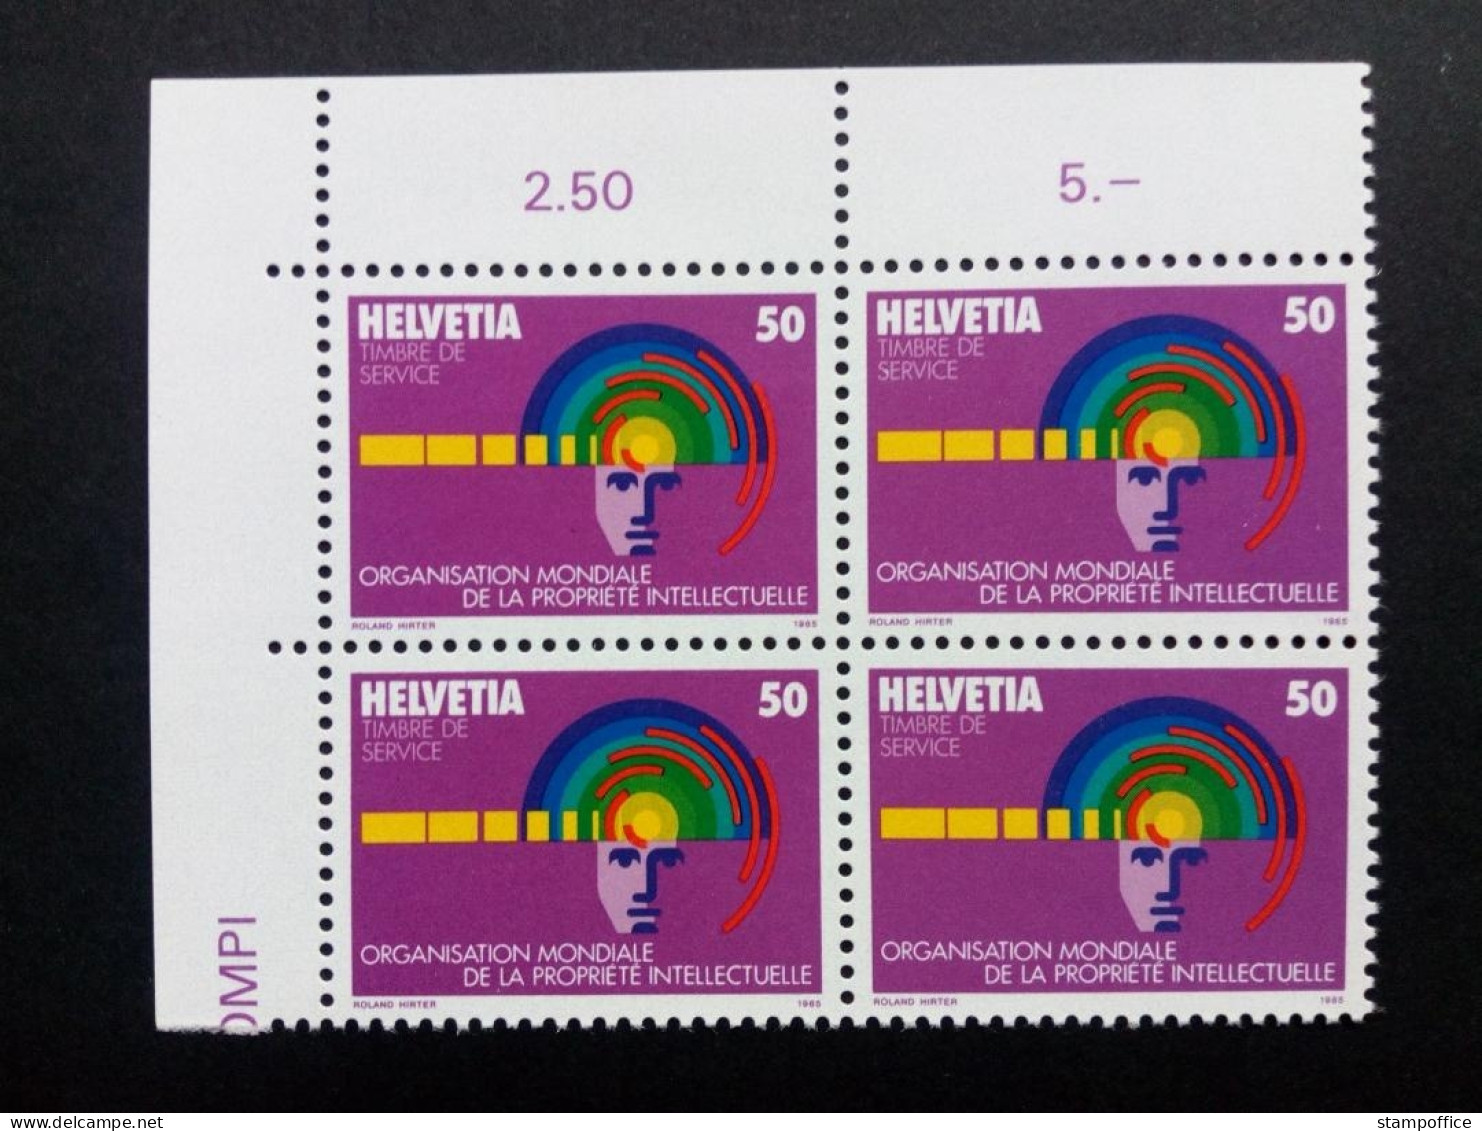 SCHWEIZ OMPI MI-NR. 5 POSTFRISCH(MINT) 4er BLOCK GEISTIGES EIGENTUM 1985 - Unused Stamps